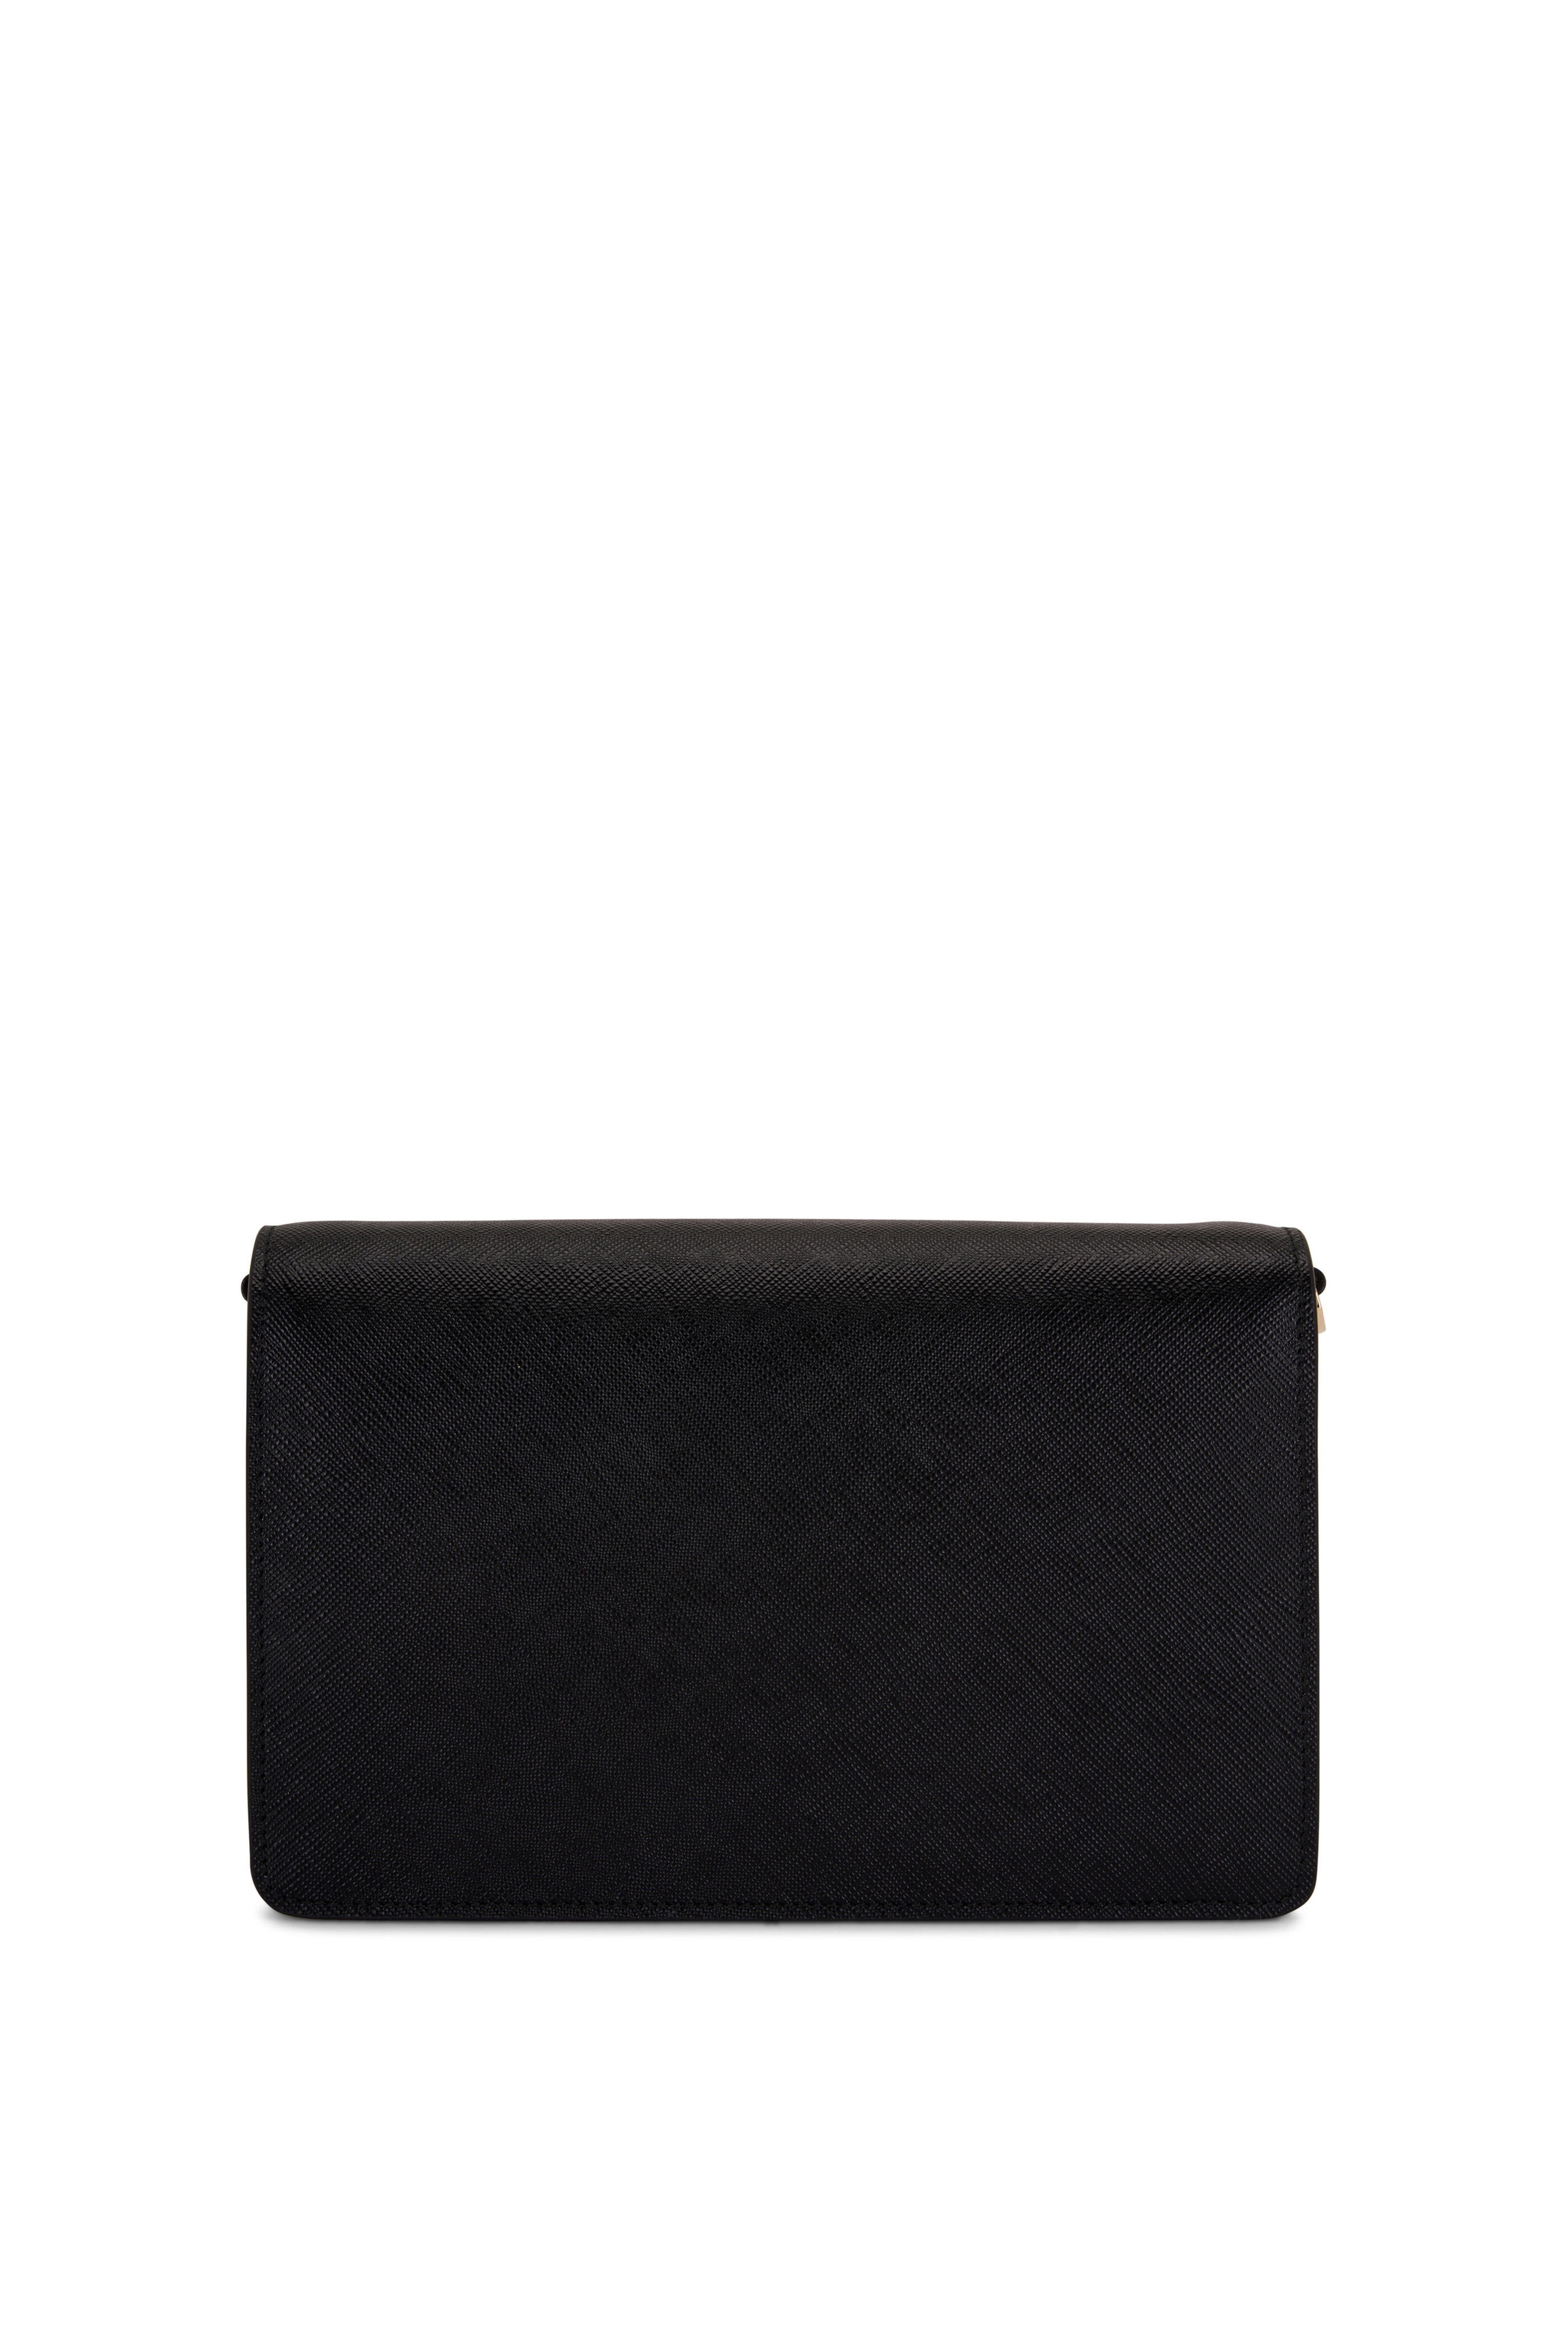 Prada Black Saffiano Leather Envelope Shoulder Bag